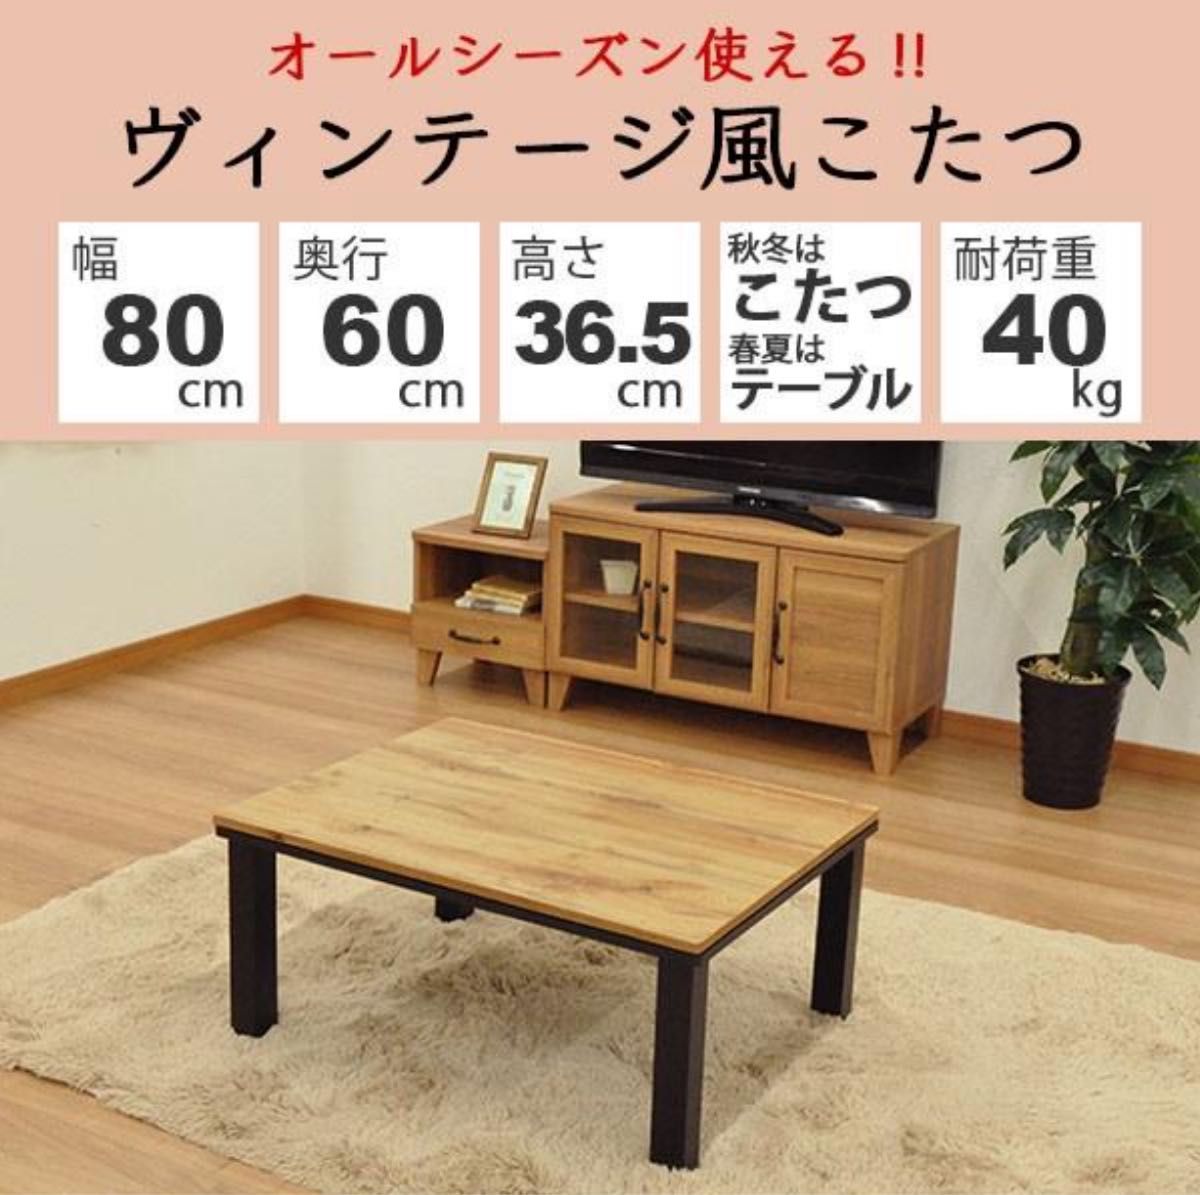 【5/31まで】こたつ テーブル 長方形 おしゃれ こたつテーブル 80x60 ヴィンテージ風